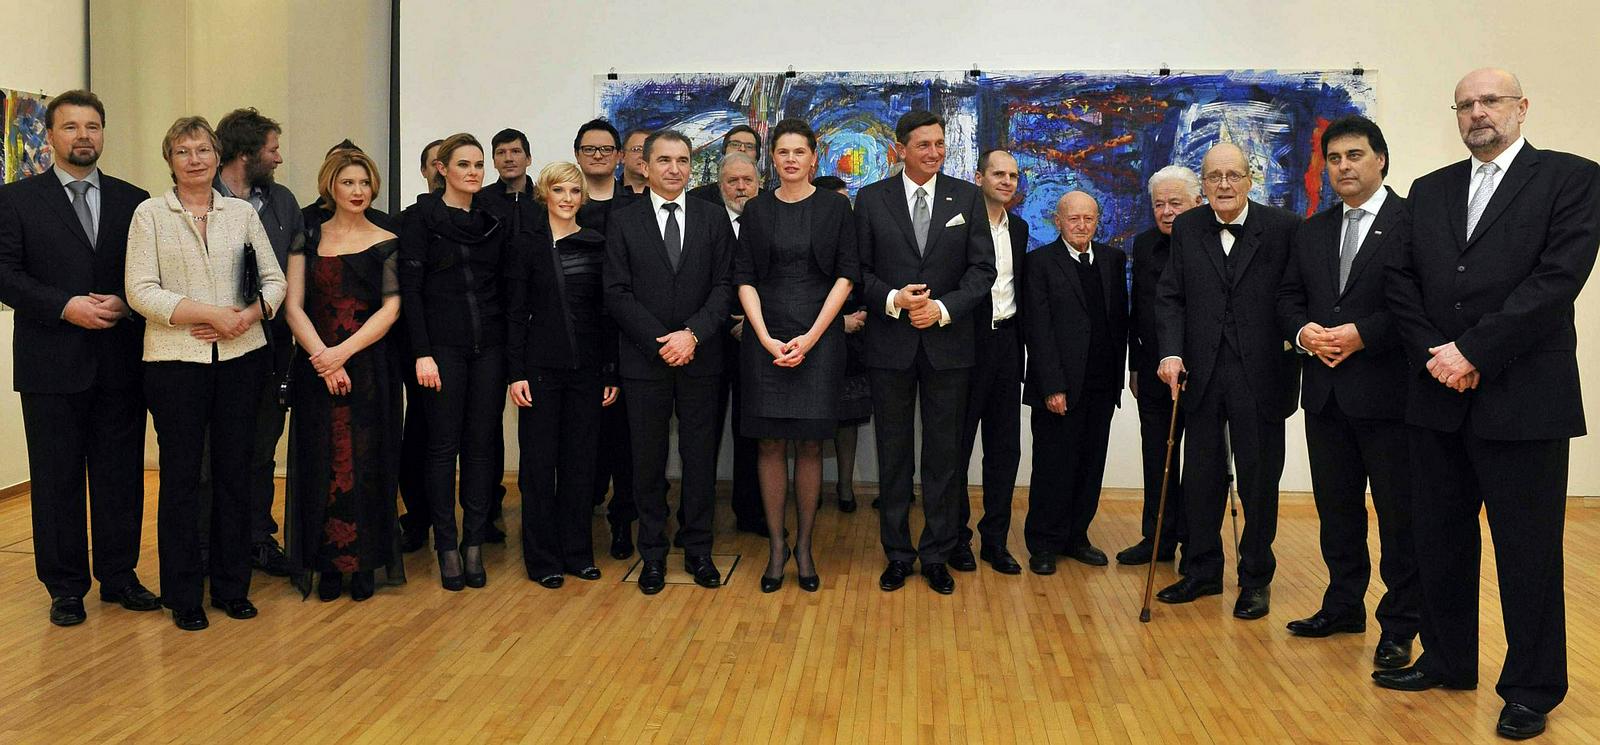 Letošnja Prešernova nagrajenca, nagrajenci Prešernovega sklada ter predsednik države in premierka. Foto: BoBo